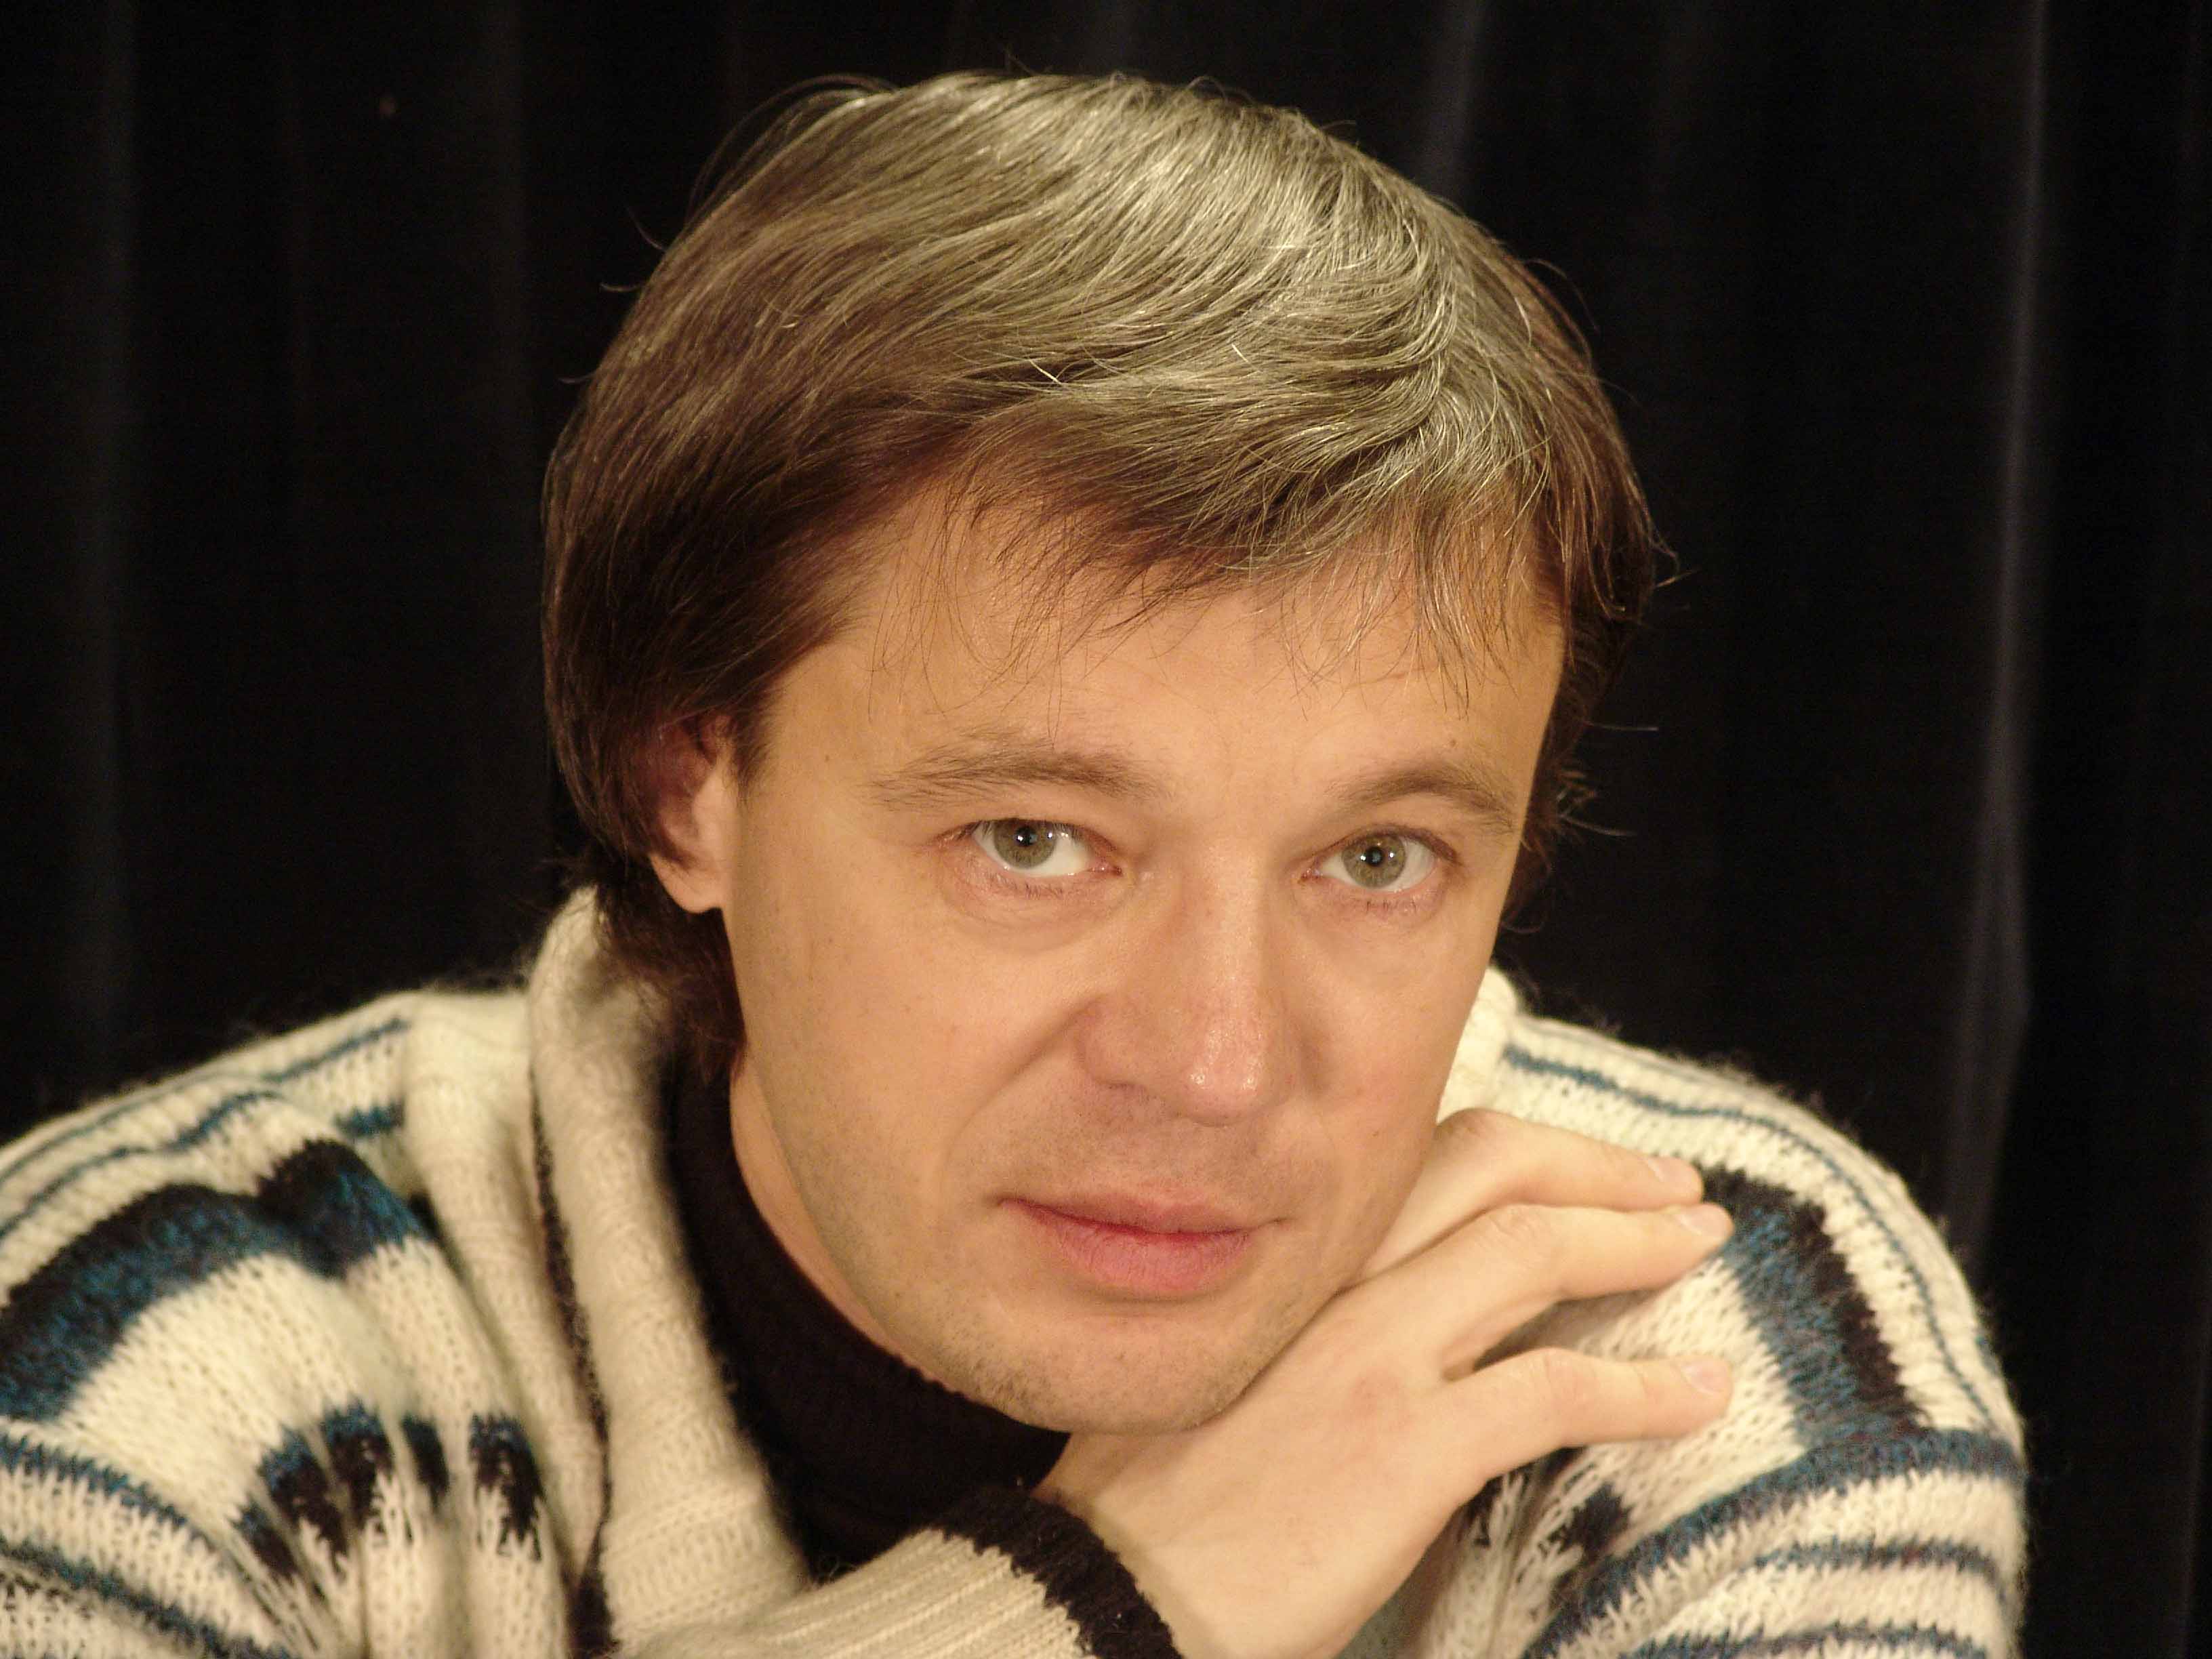 Михаил Росляков